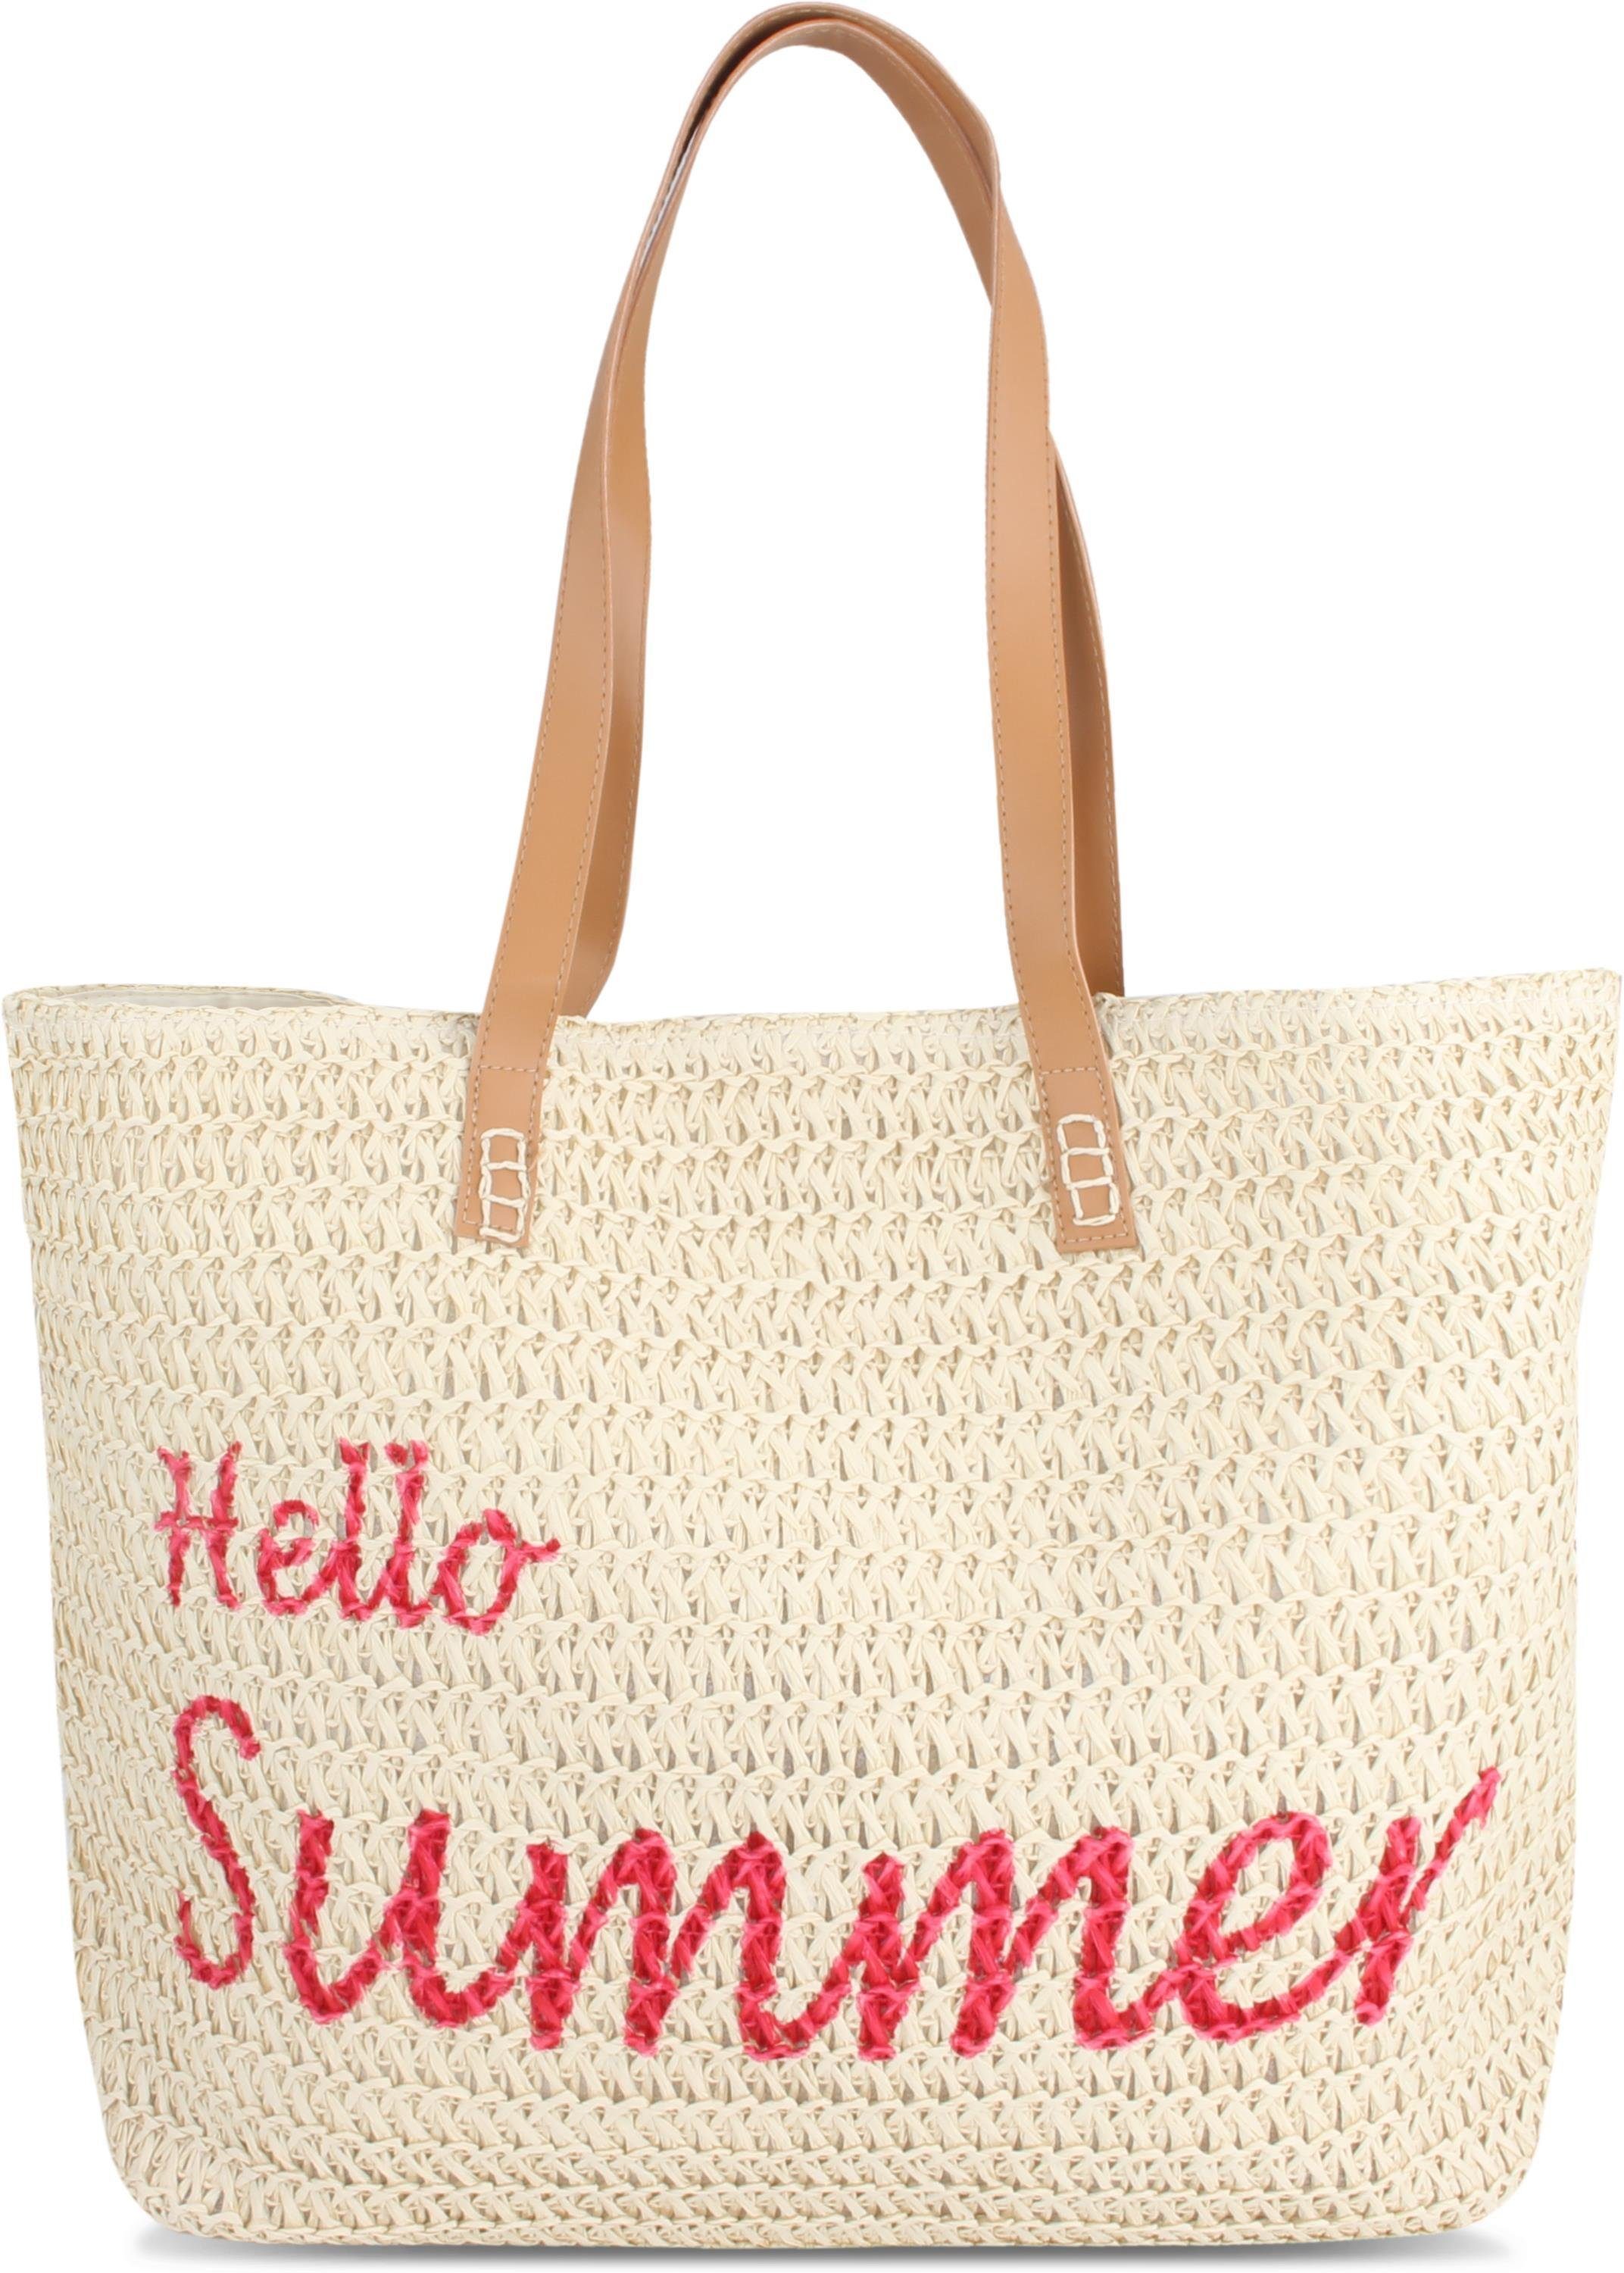 Summer als Strandtasche Bequeme Strandtasche, tragbar Schultertasche Hello normani Henkeltasche Sommer-Umhängetasche,